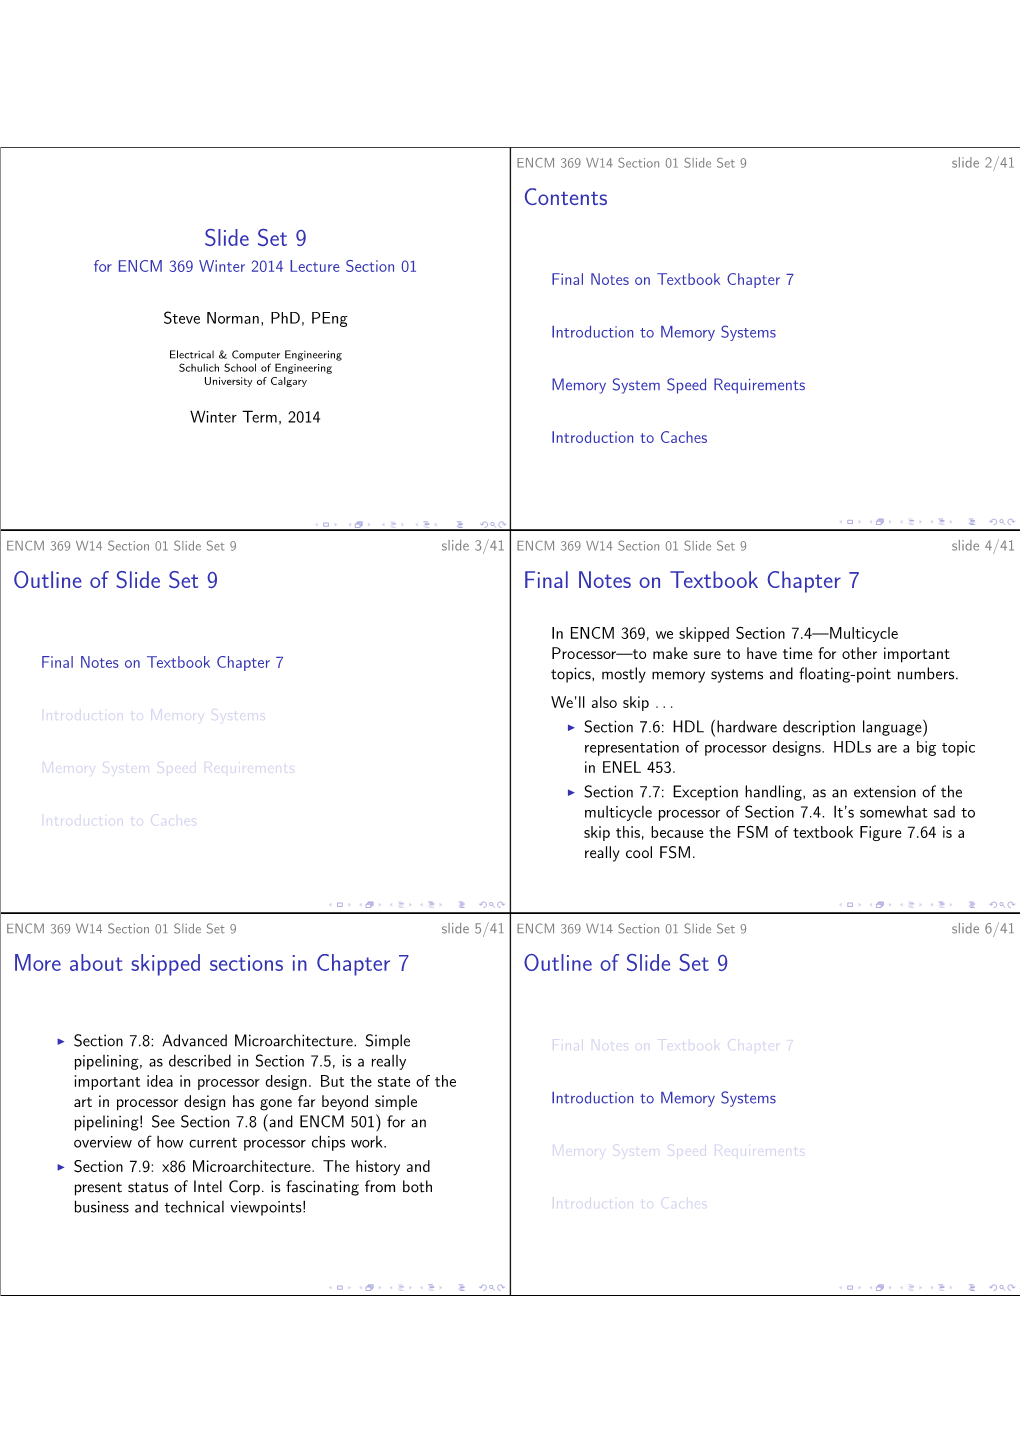 Slide Set 9 Contents Outline of Slide Set 9 Final Notes on Textbook